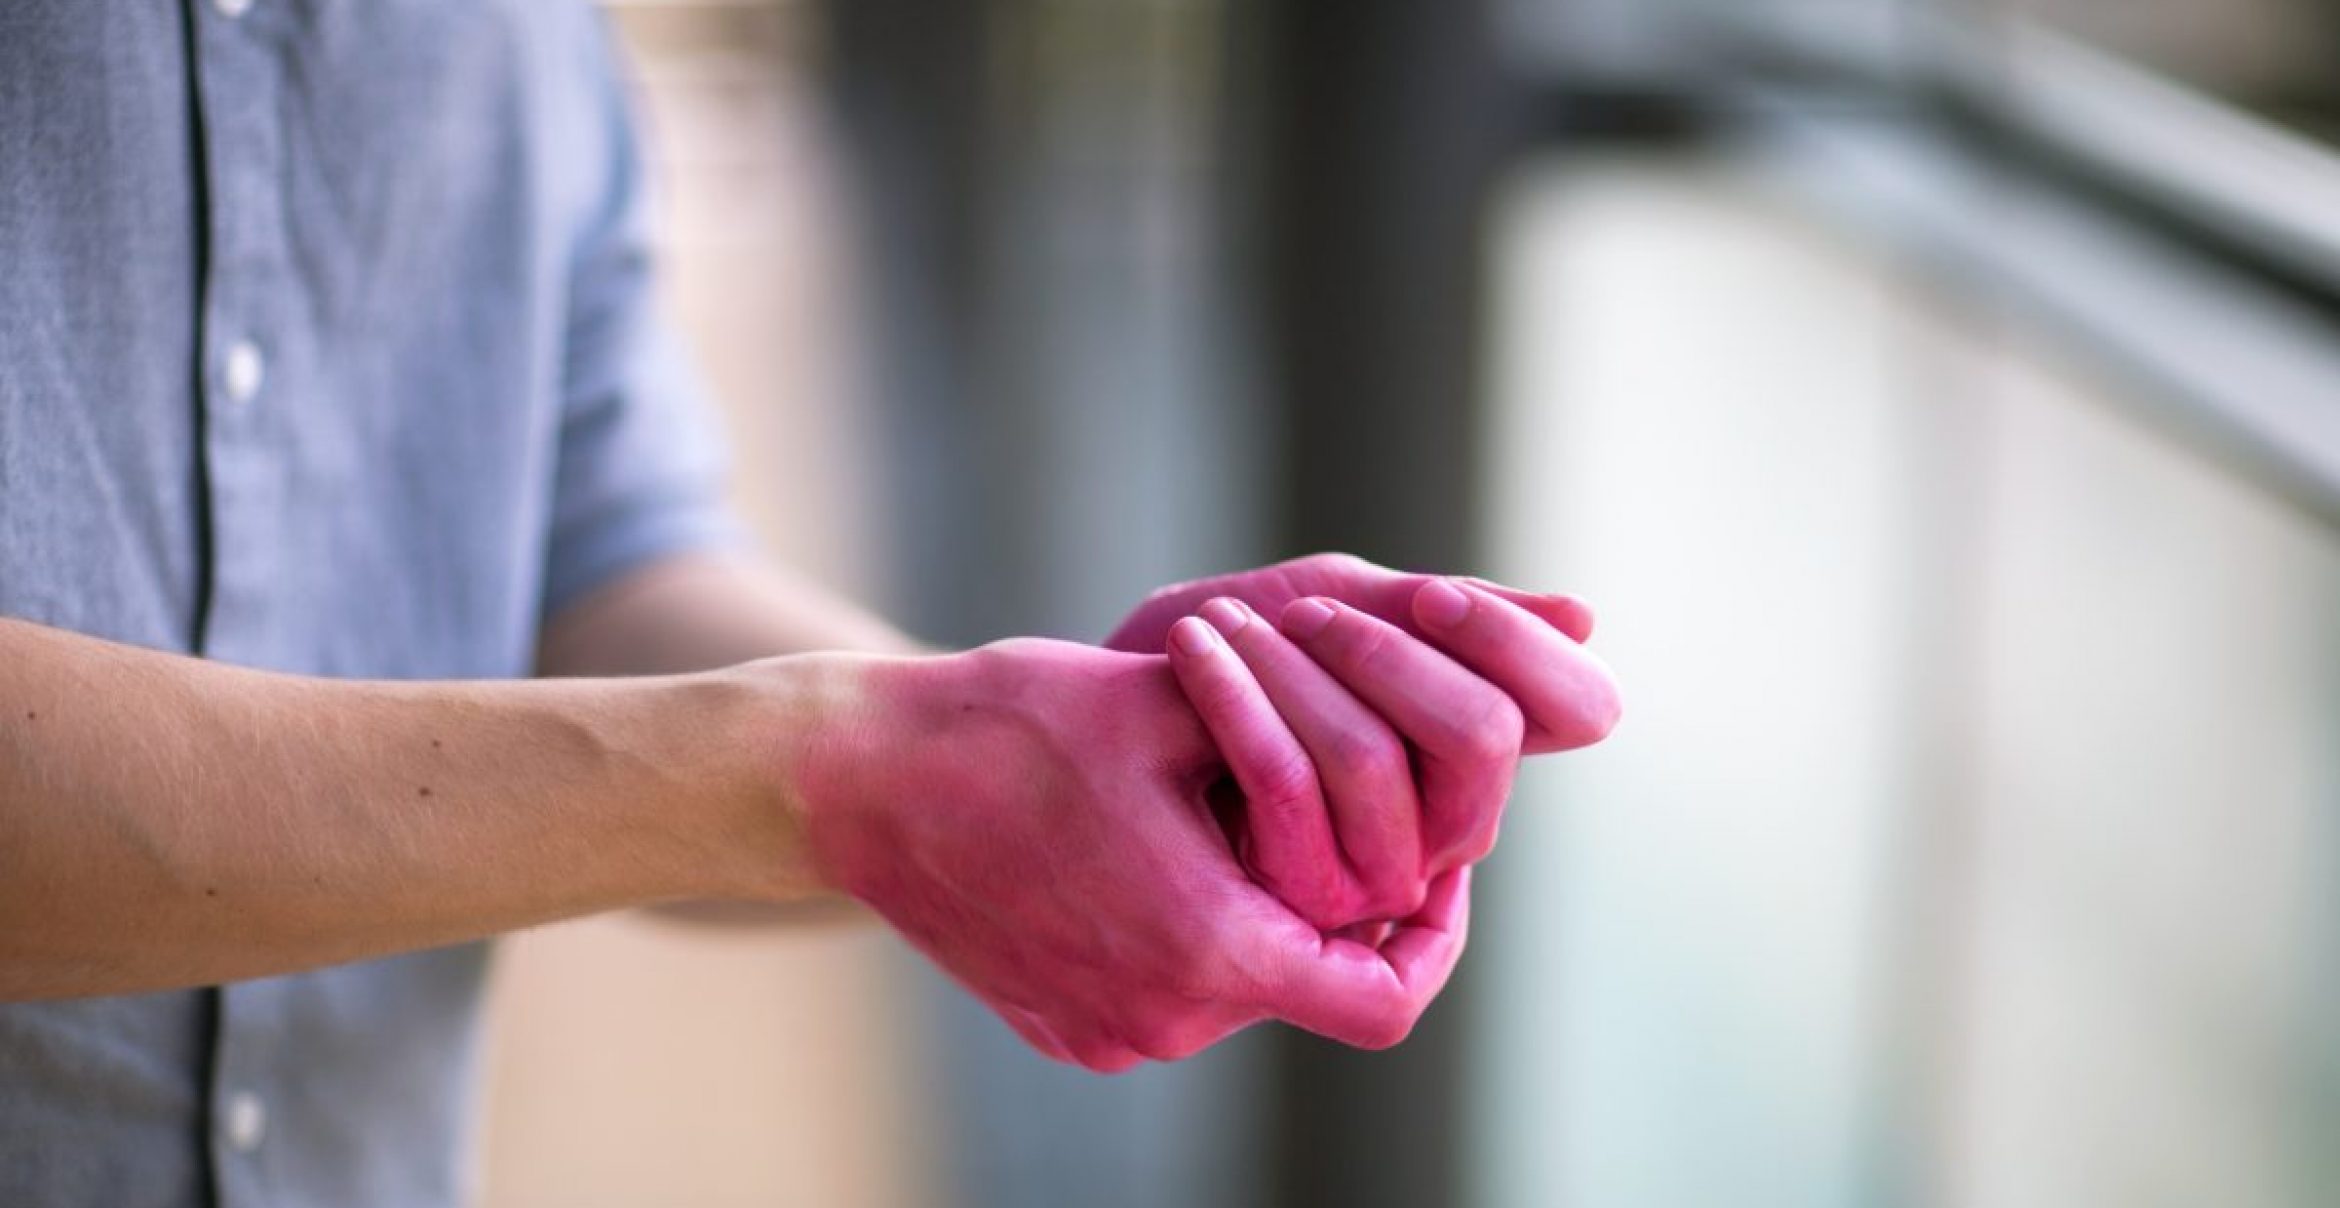 Heyfair kämpft mit pinken Händen gegen unzureichende Desinfektion